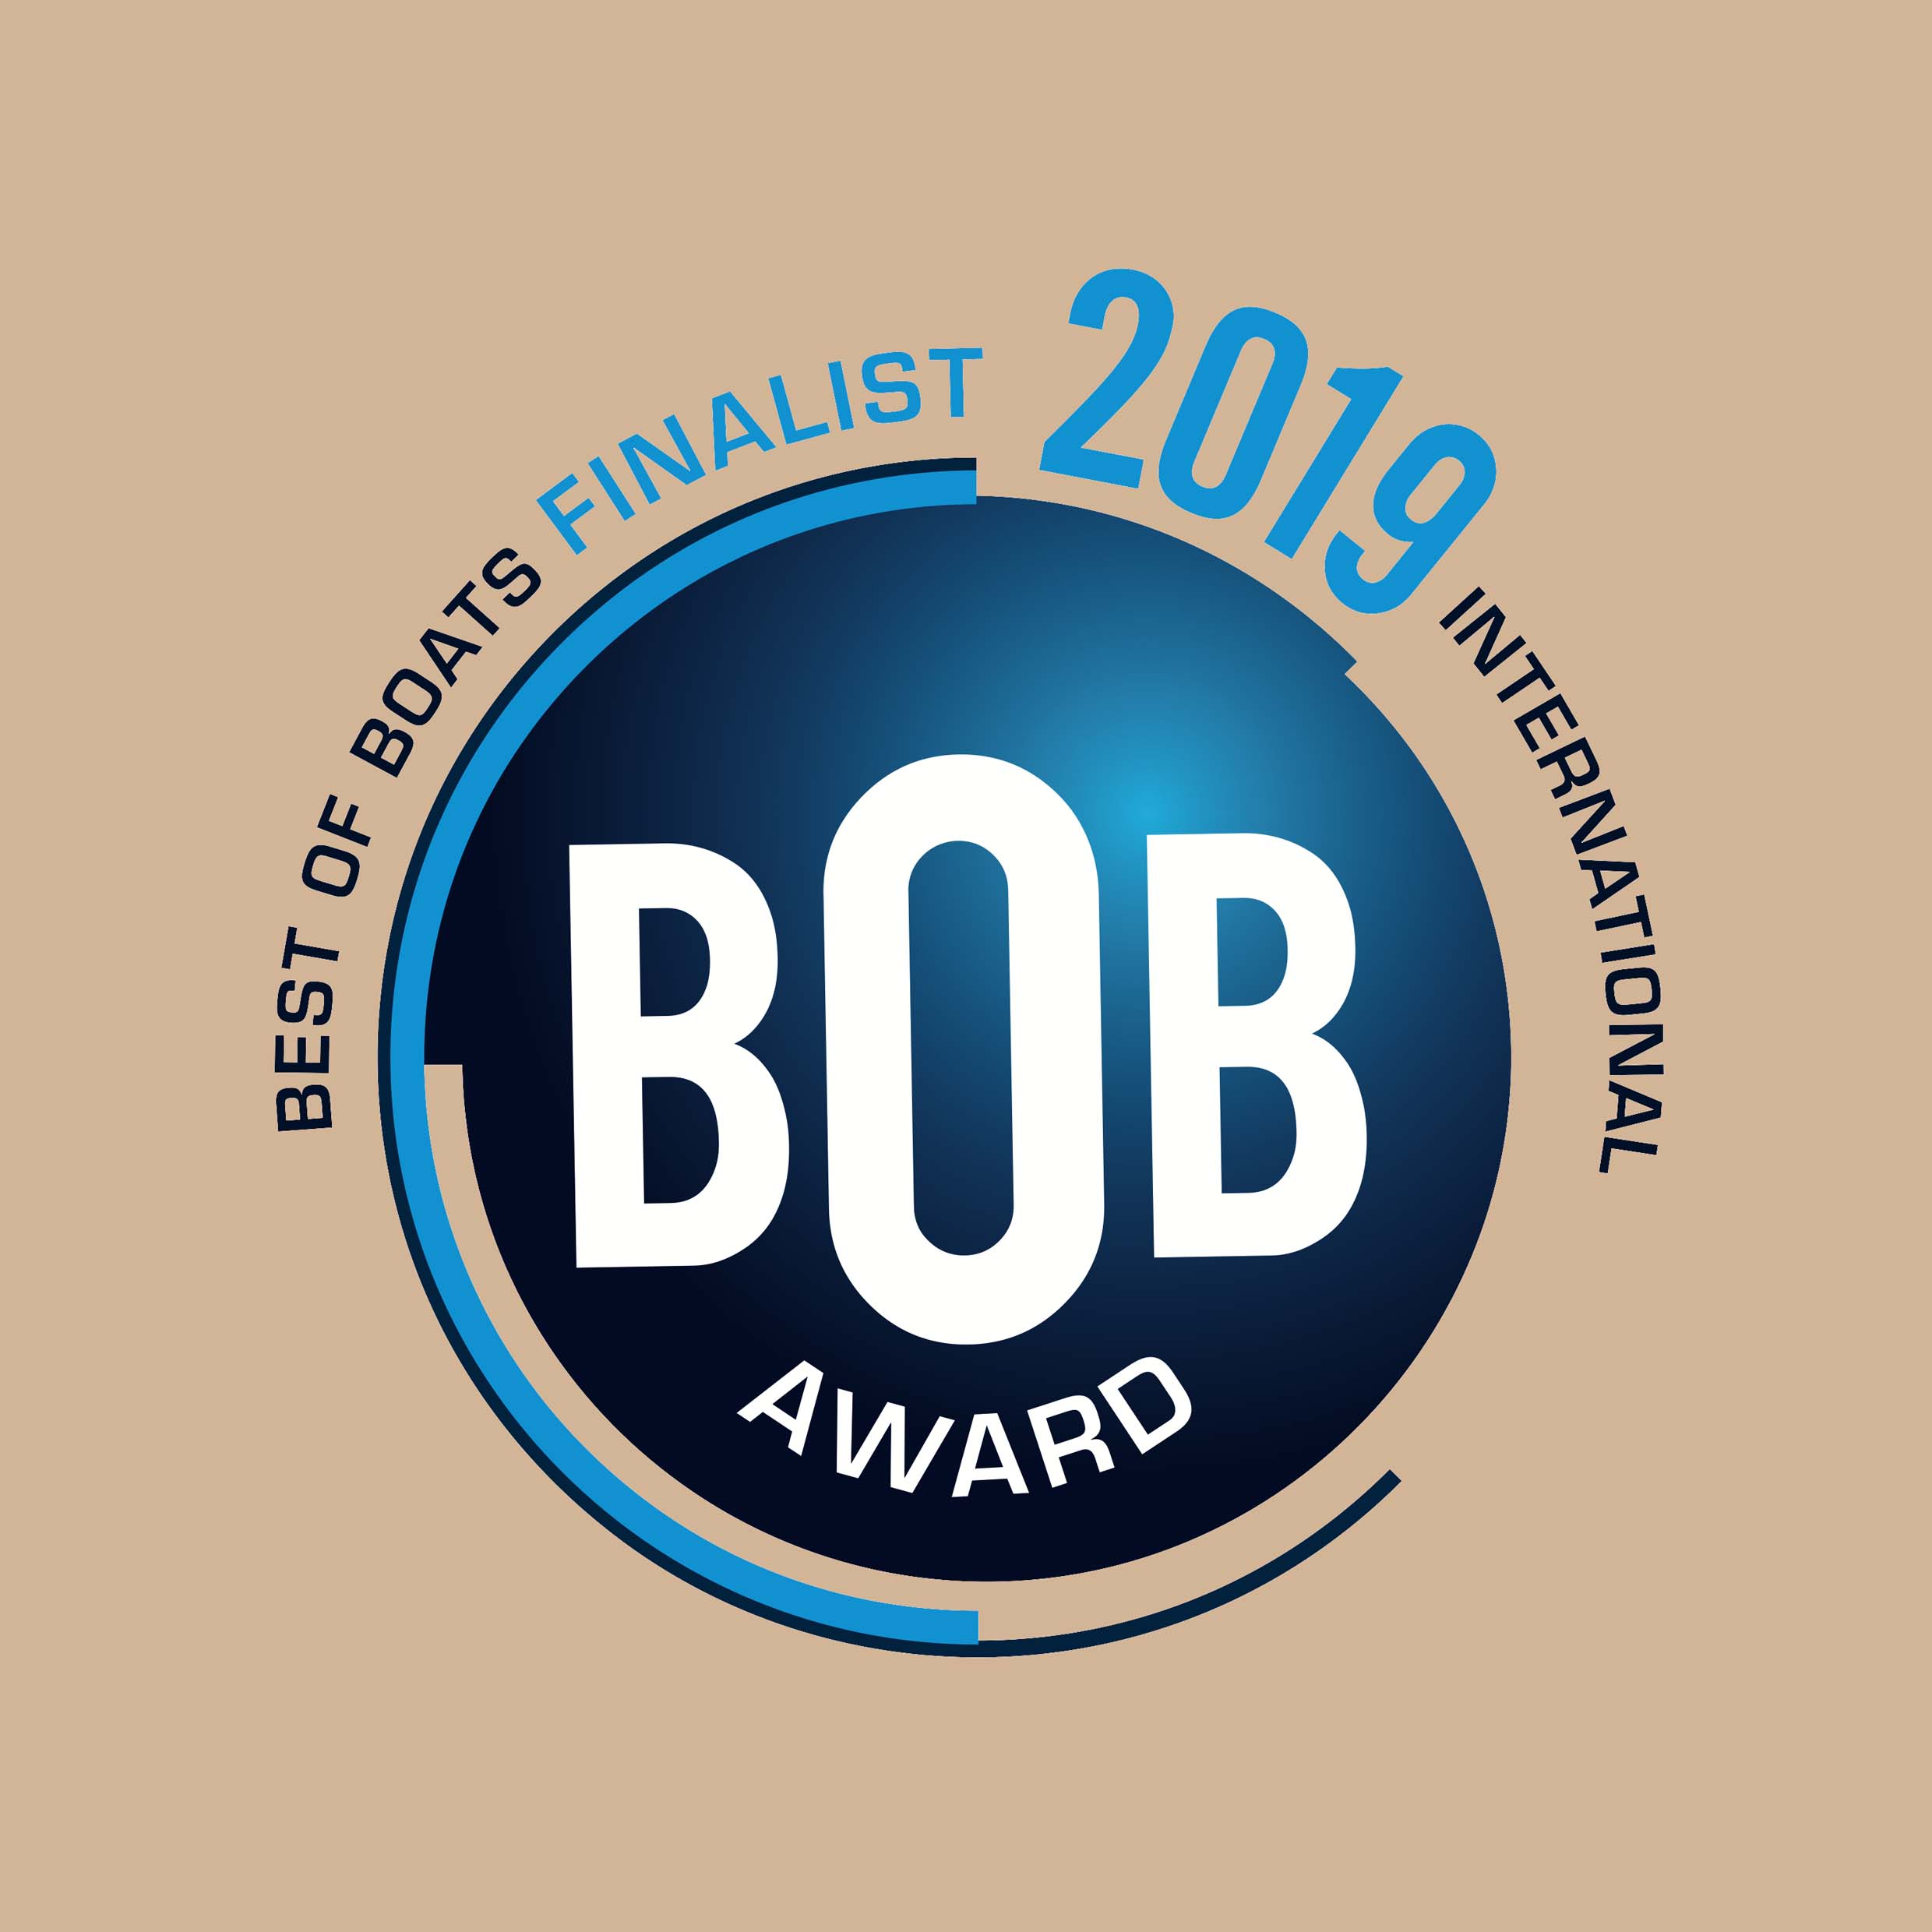 Jacht motorowe Jeanneau zakwalifikowały się do nagrody Best of Boats Award 2019